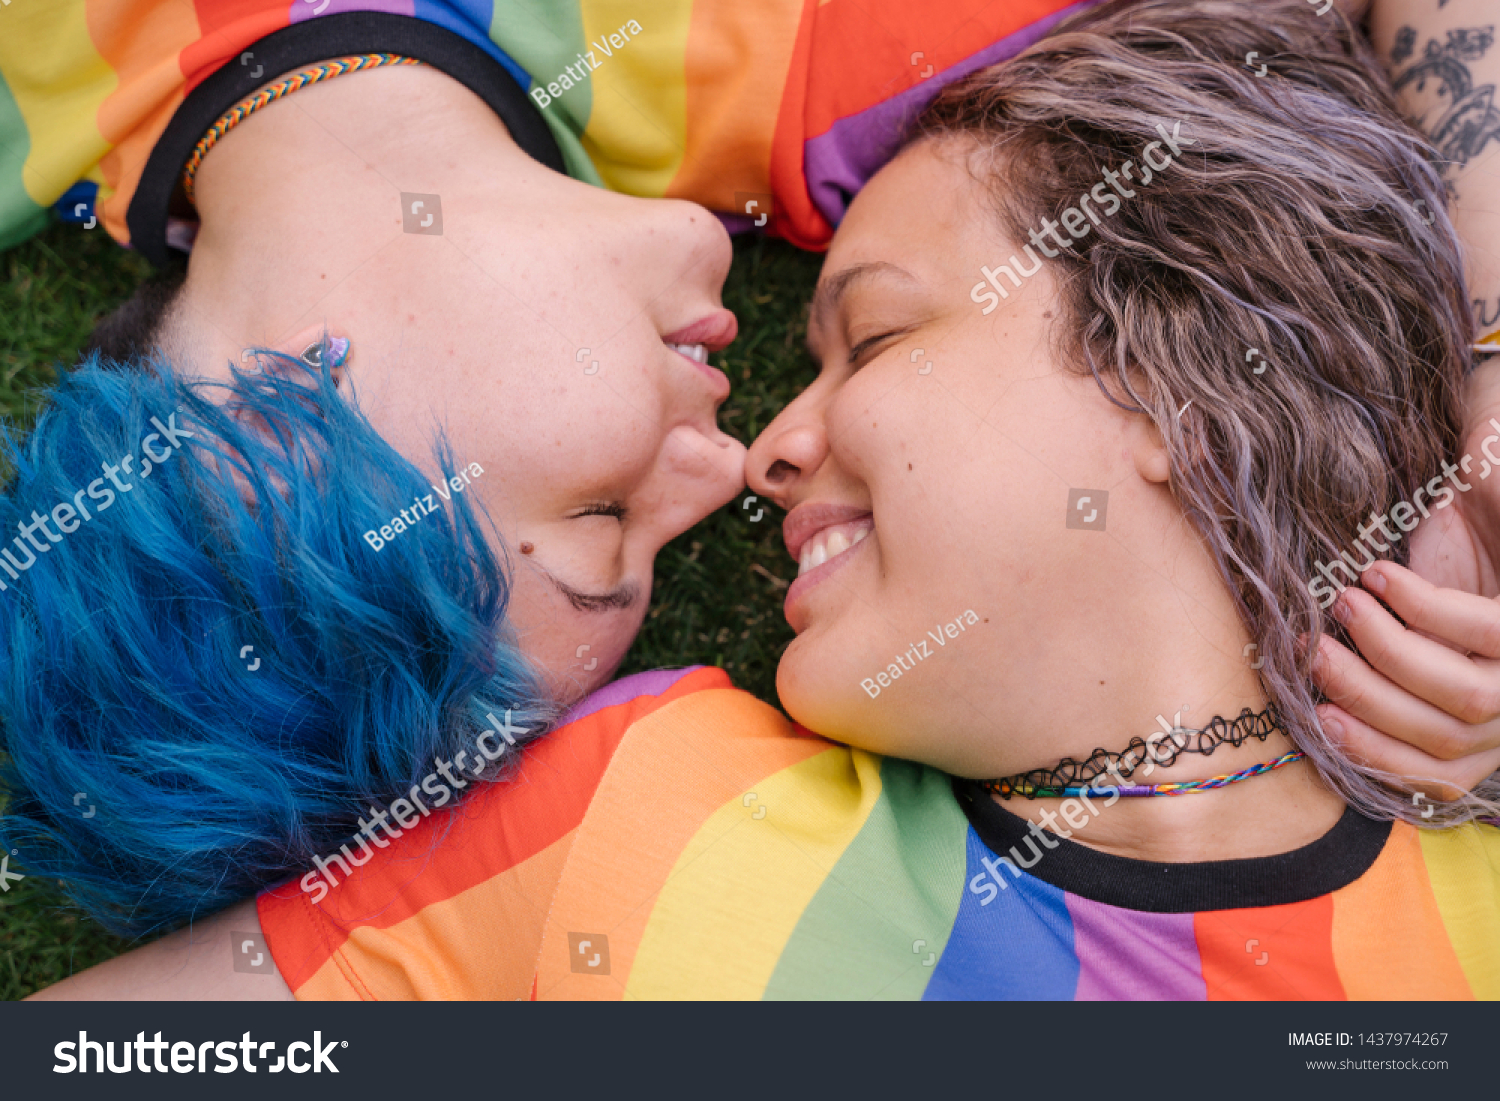 Lesbians In Public